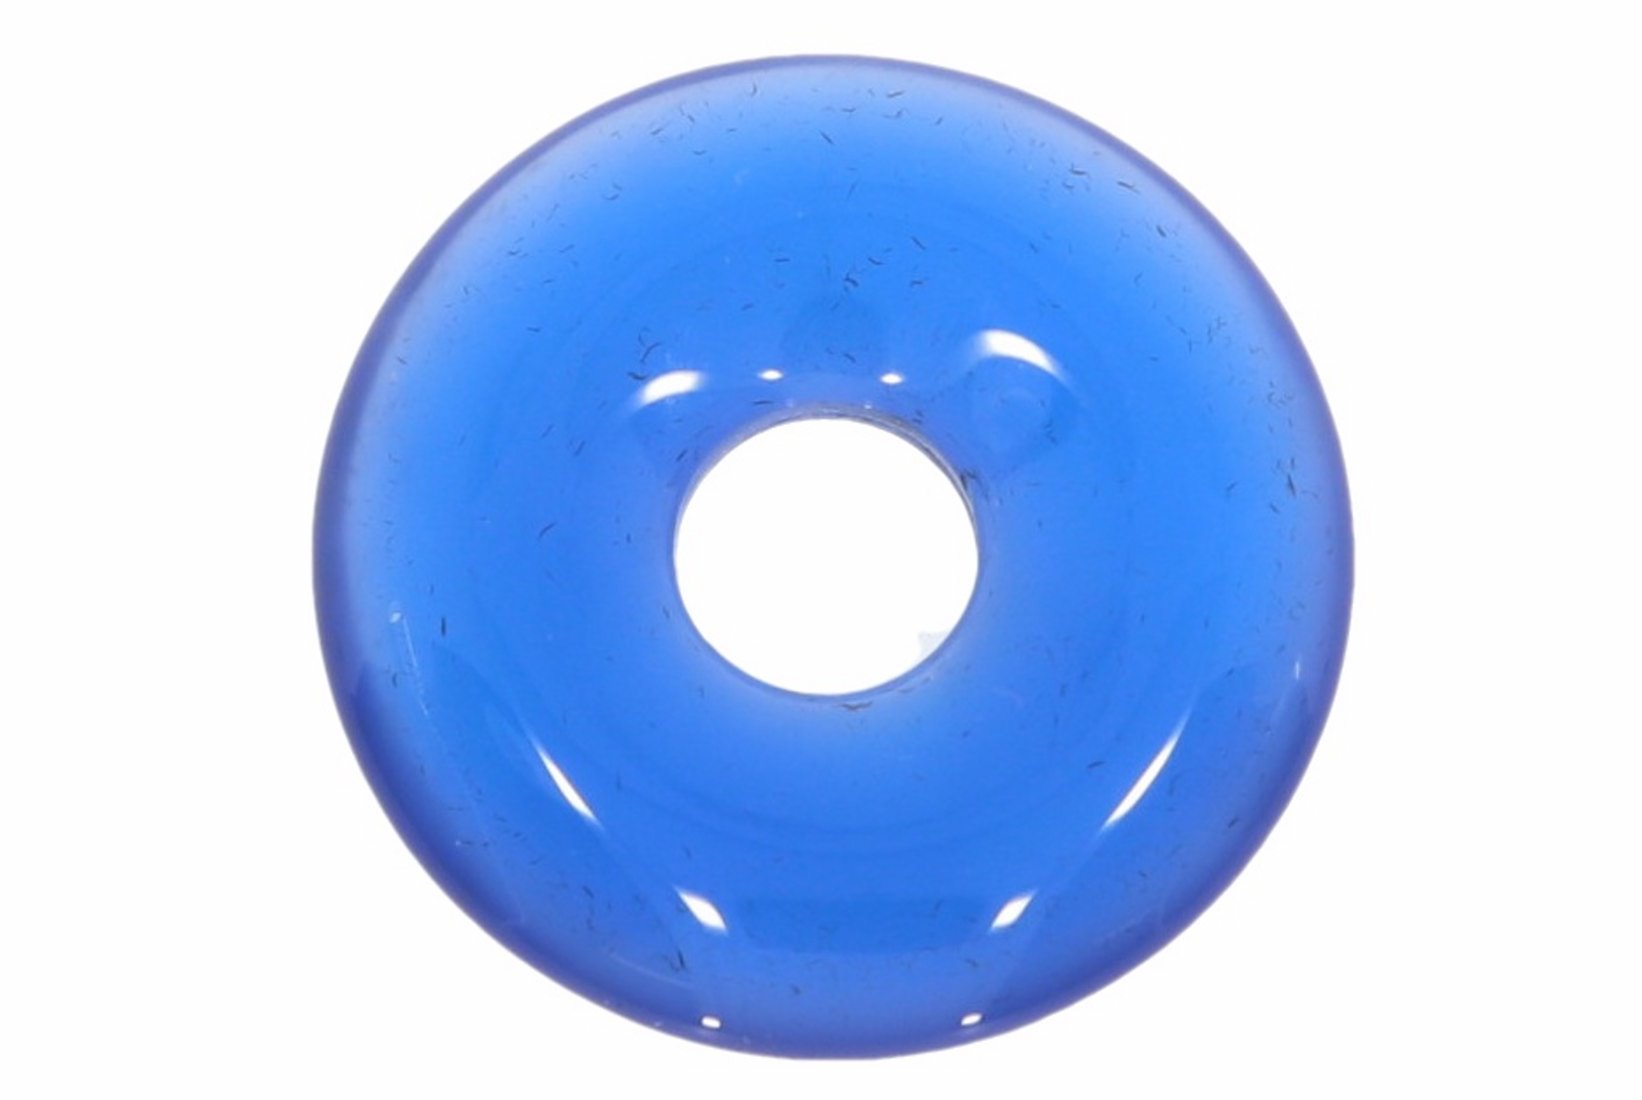 Achat blau Donut Schmuck Anhänger 20mm & Donut Halter Silber HS1574